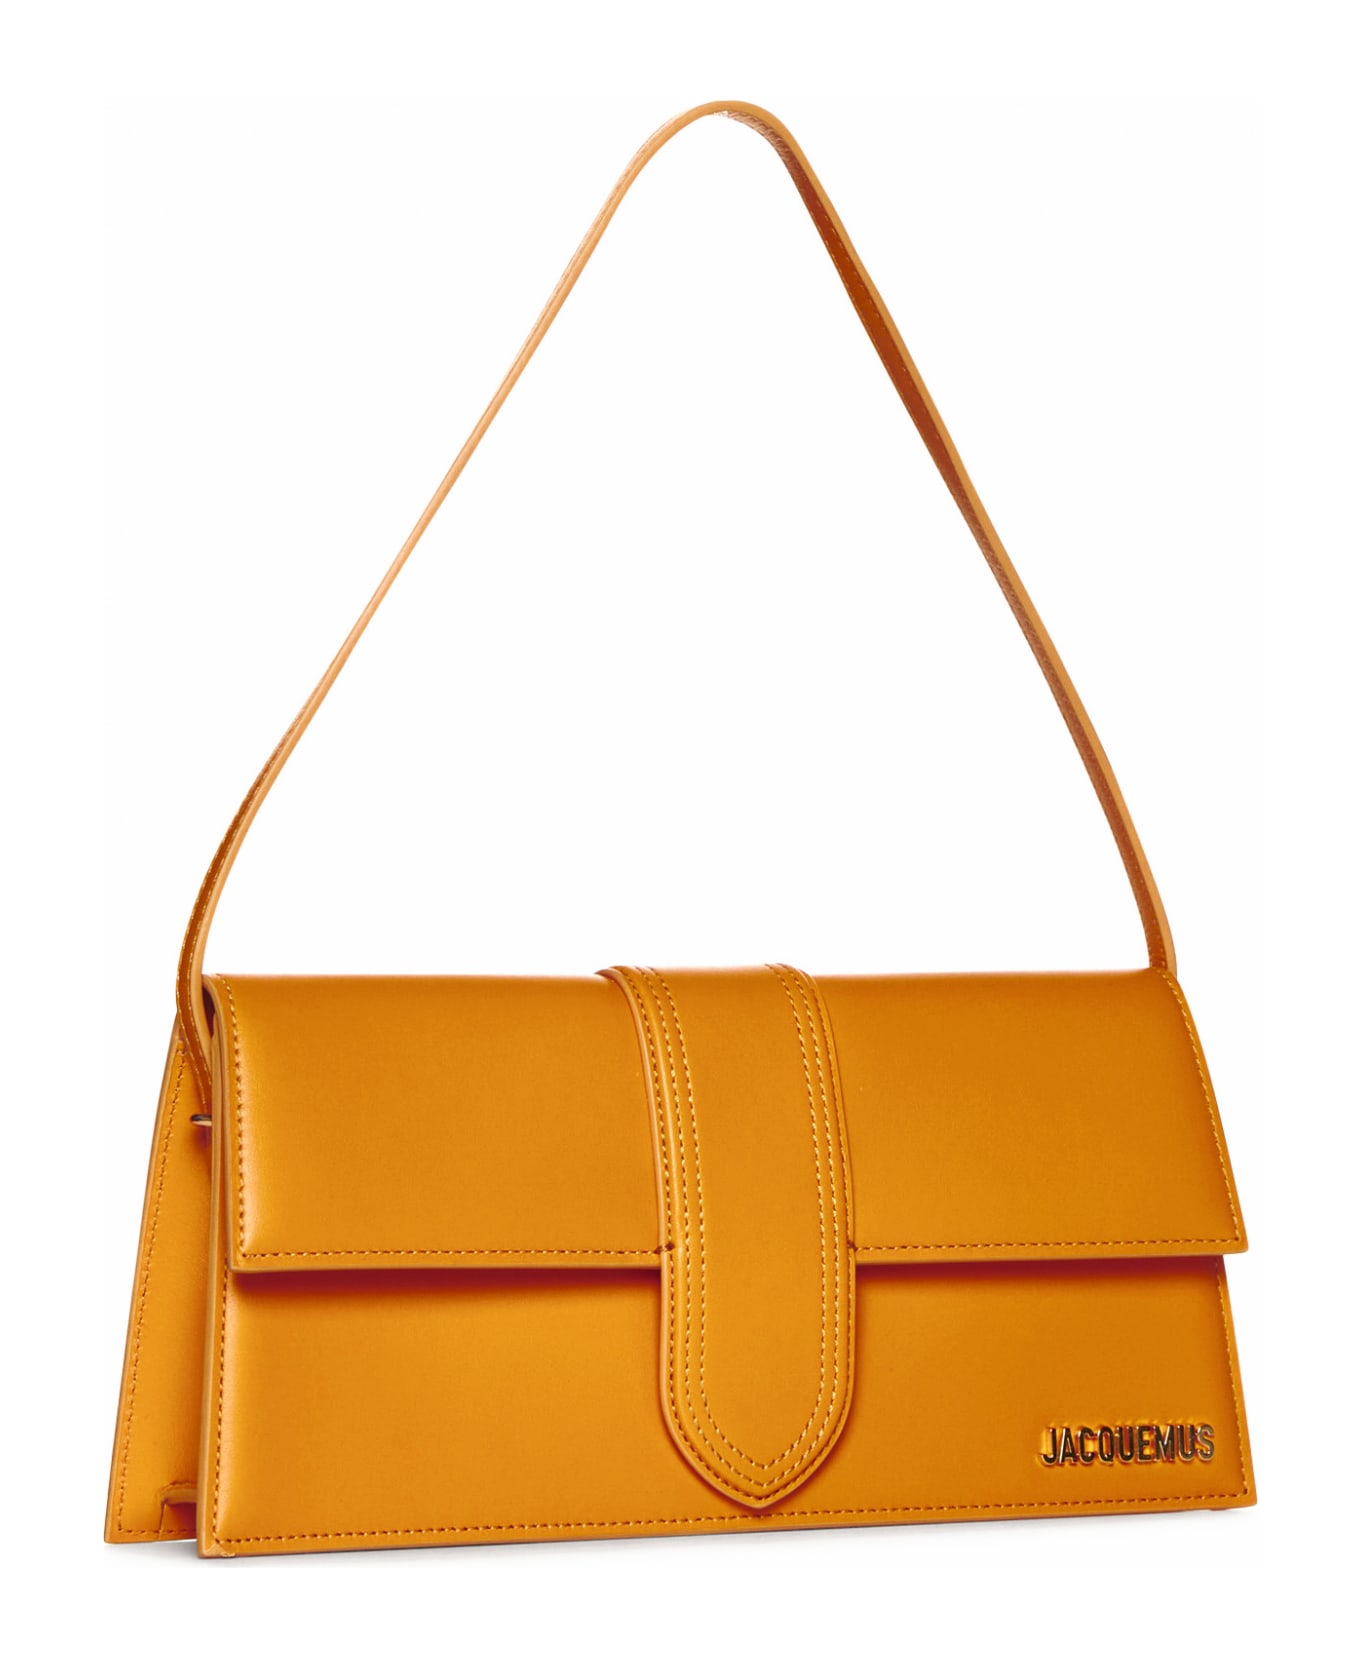 Jacquemus Le Long Baby Bag - Dark orange ショルダーバッグ